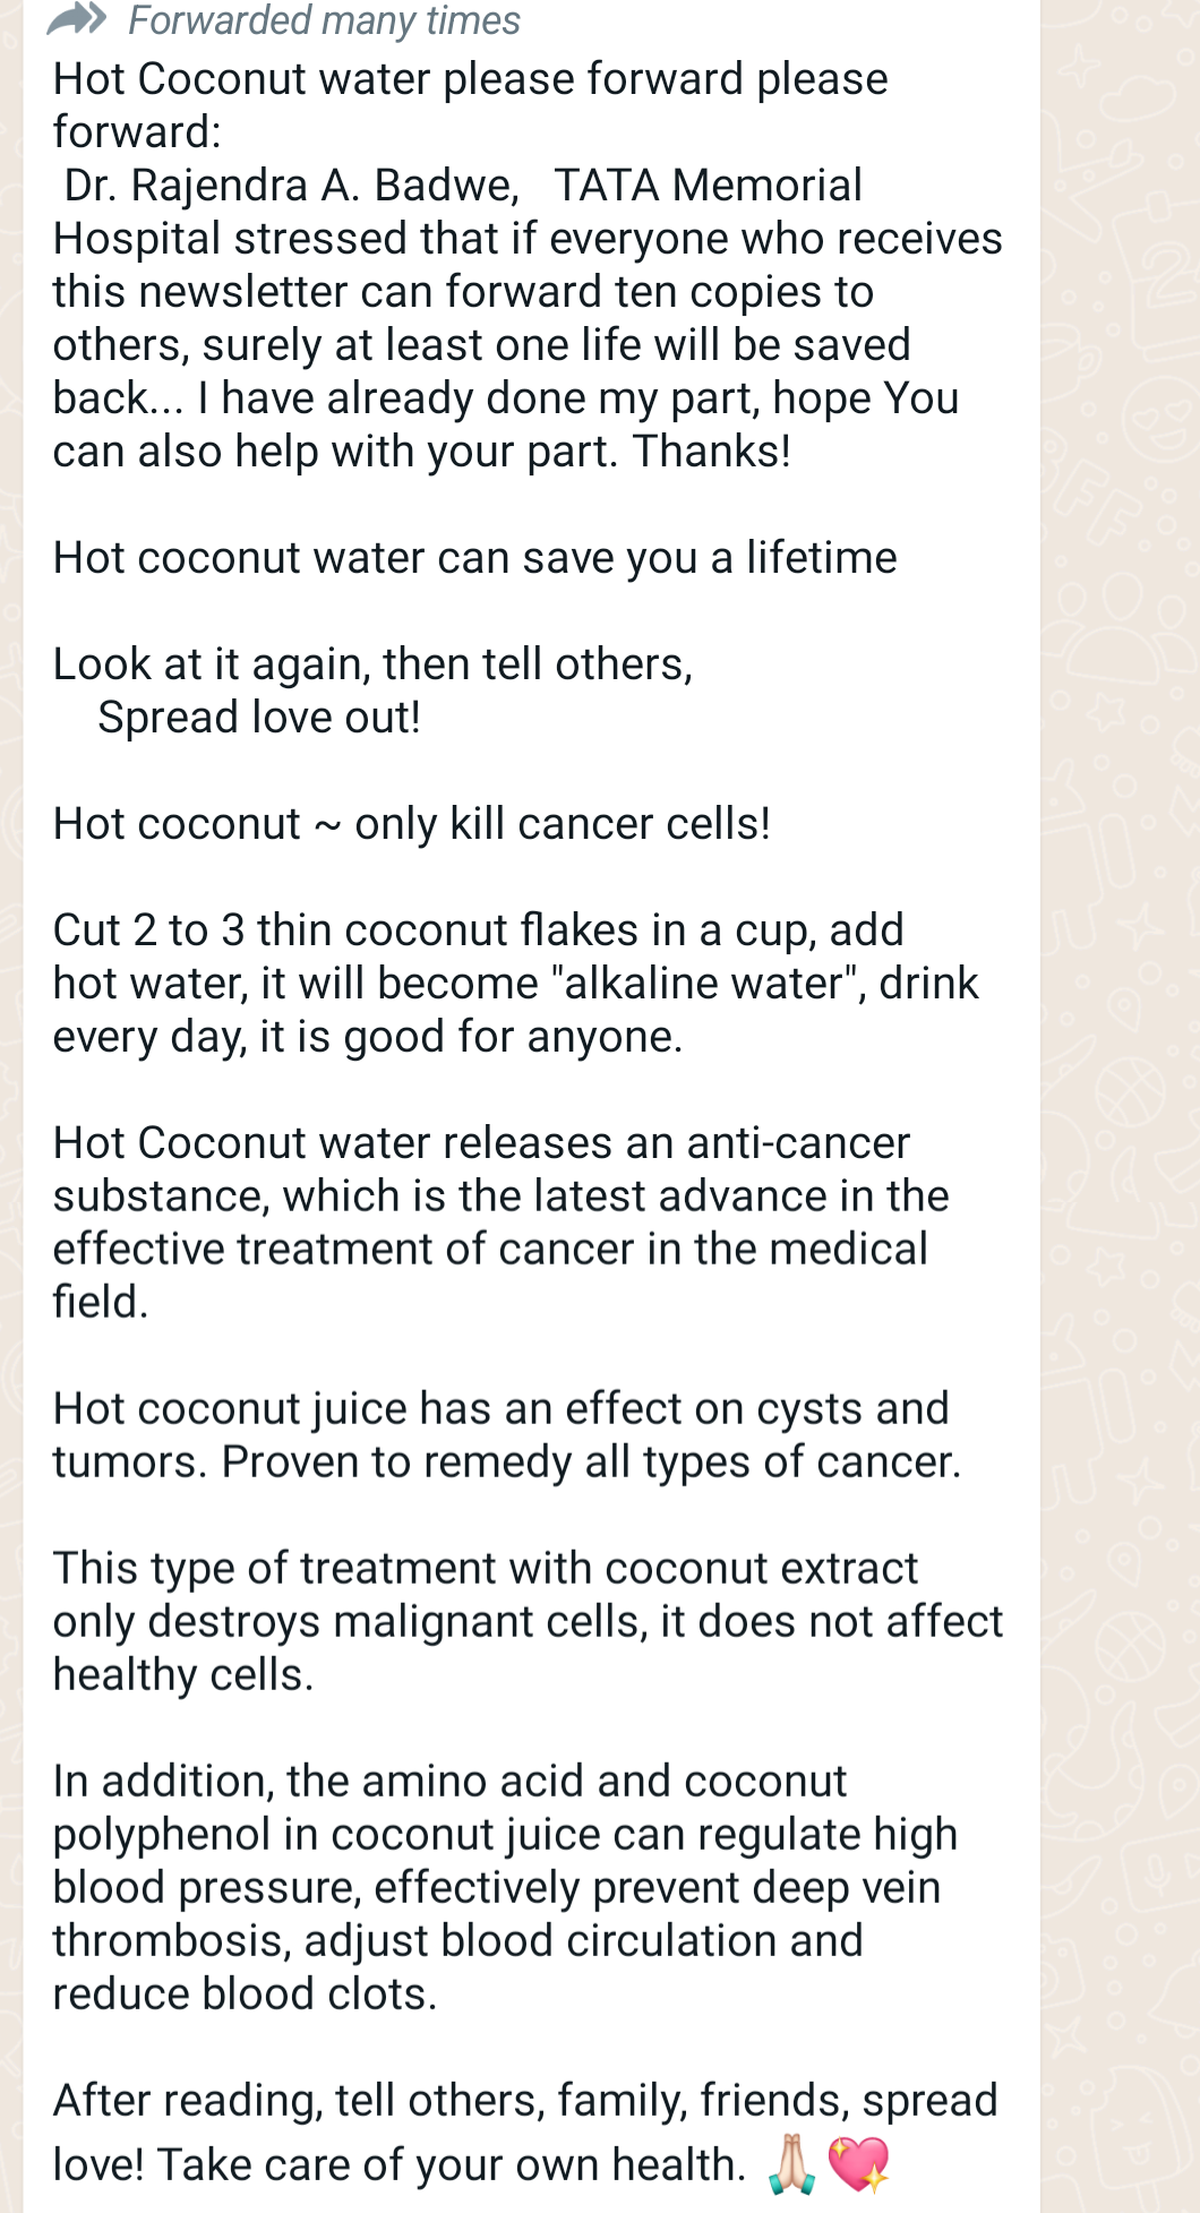 Vérification des faits : l’eau de coco n’est pas un remède contre le cancer